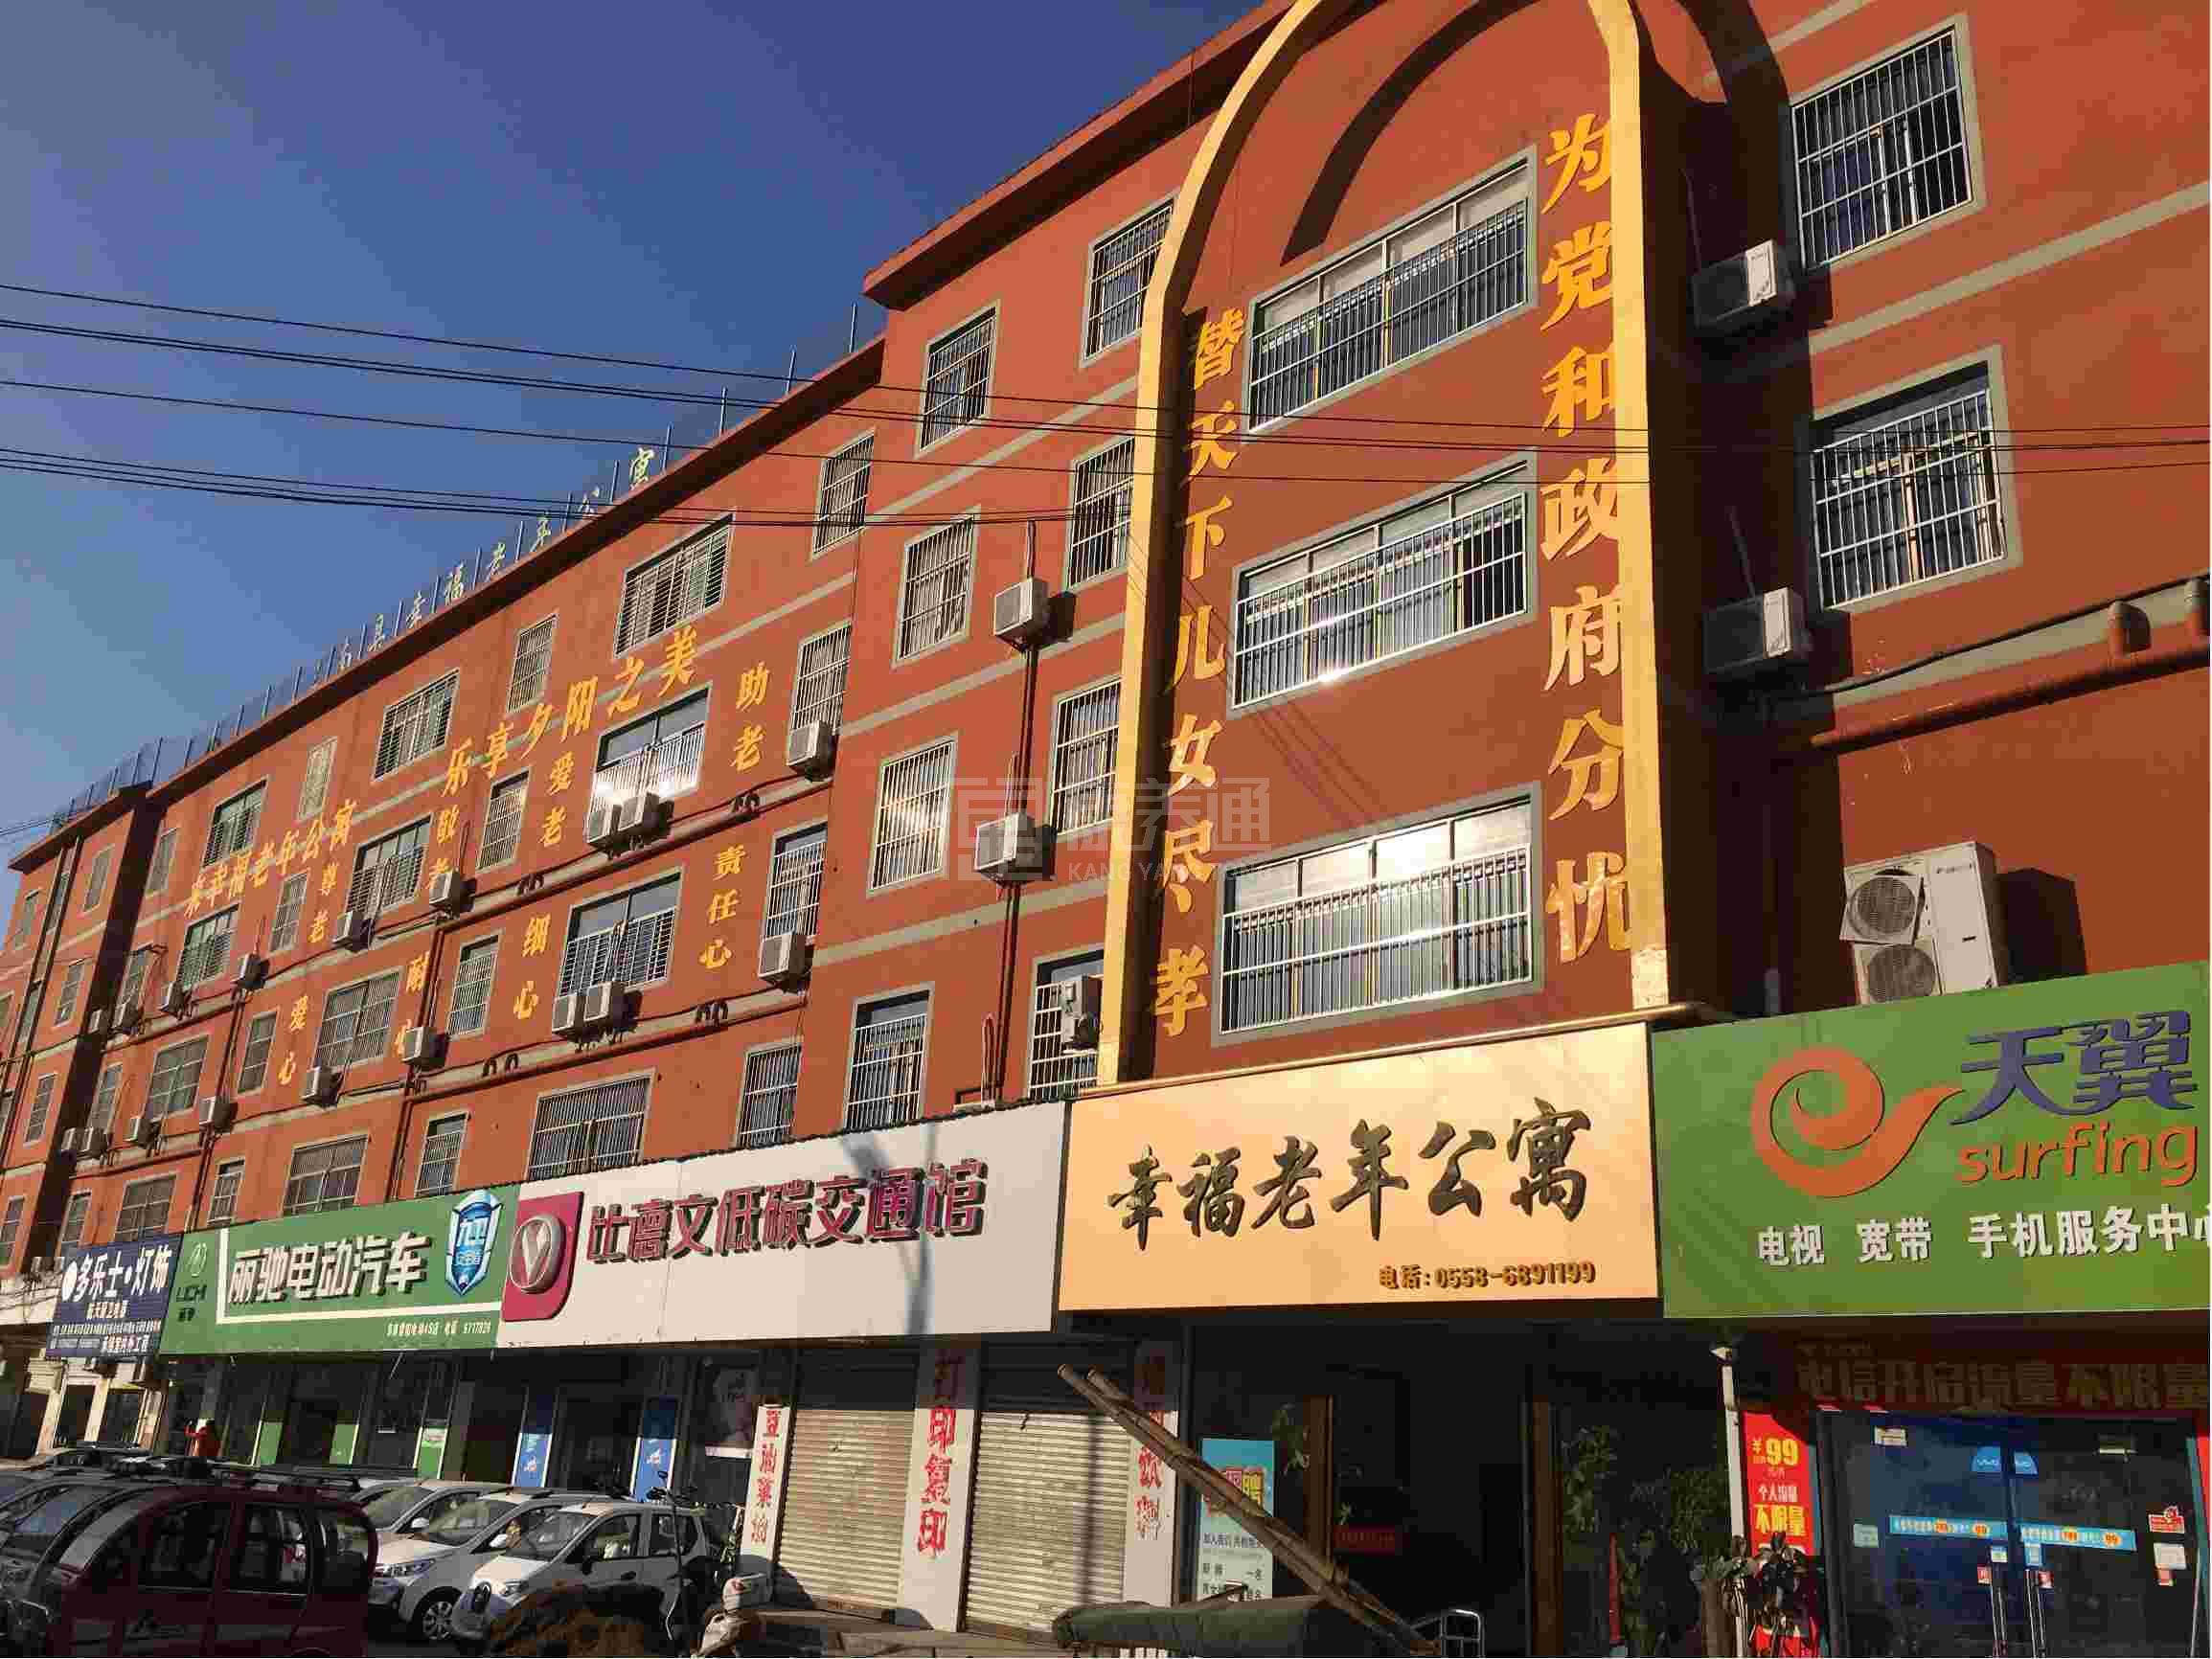 阜南县幸福老年公寓服务项目图3惬意的环境、感受岁月静好